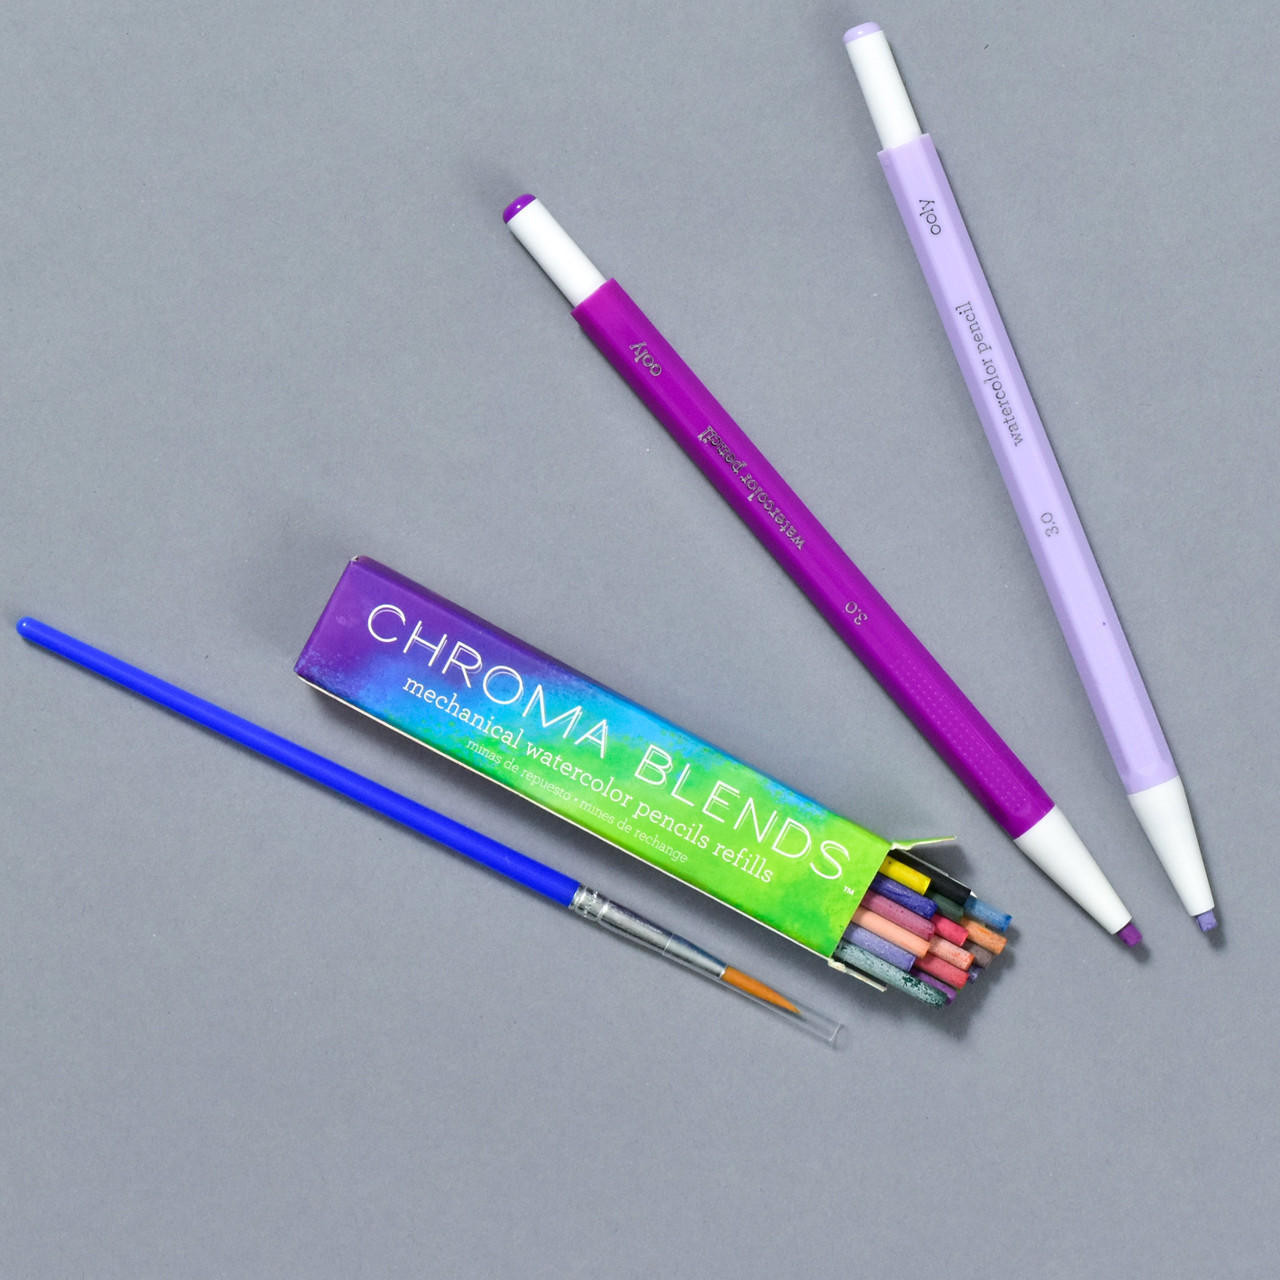 Refills Chroma Blends Mechanical Watercolor Pencils - Wonder Fair Home  Shopping Network